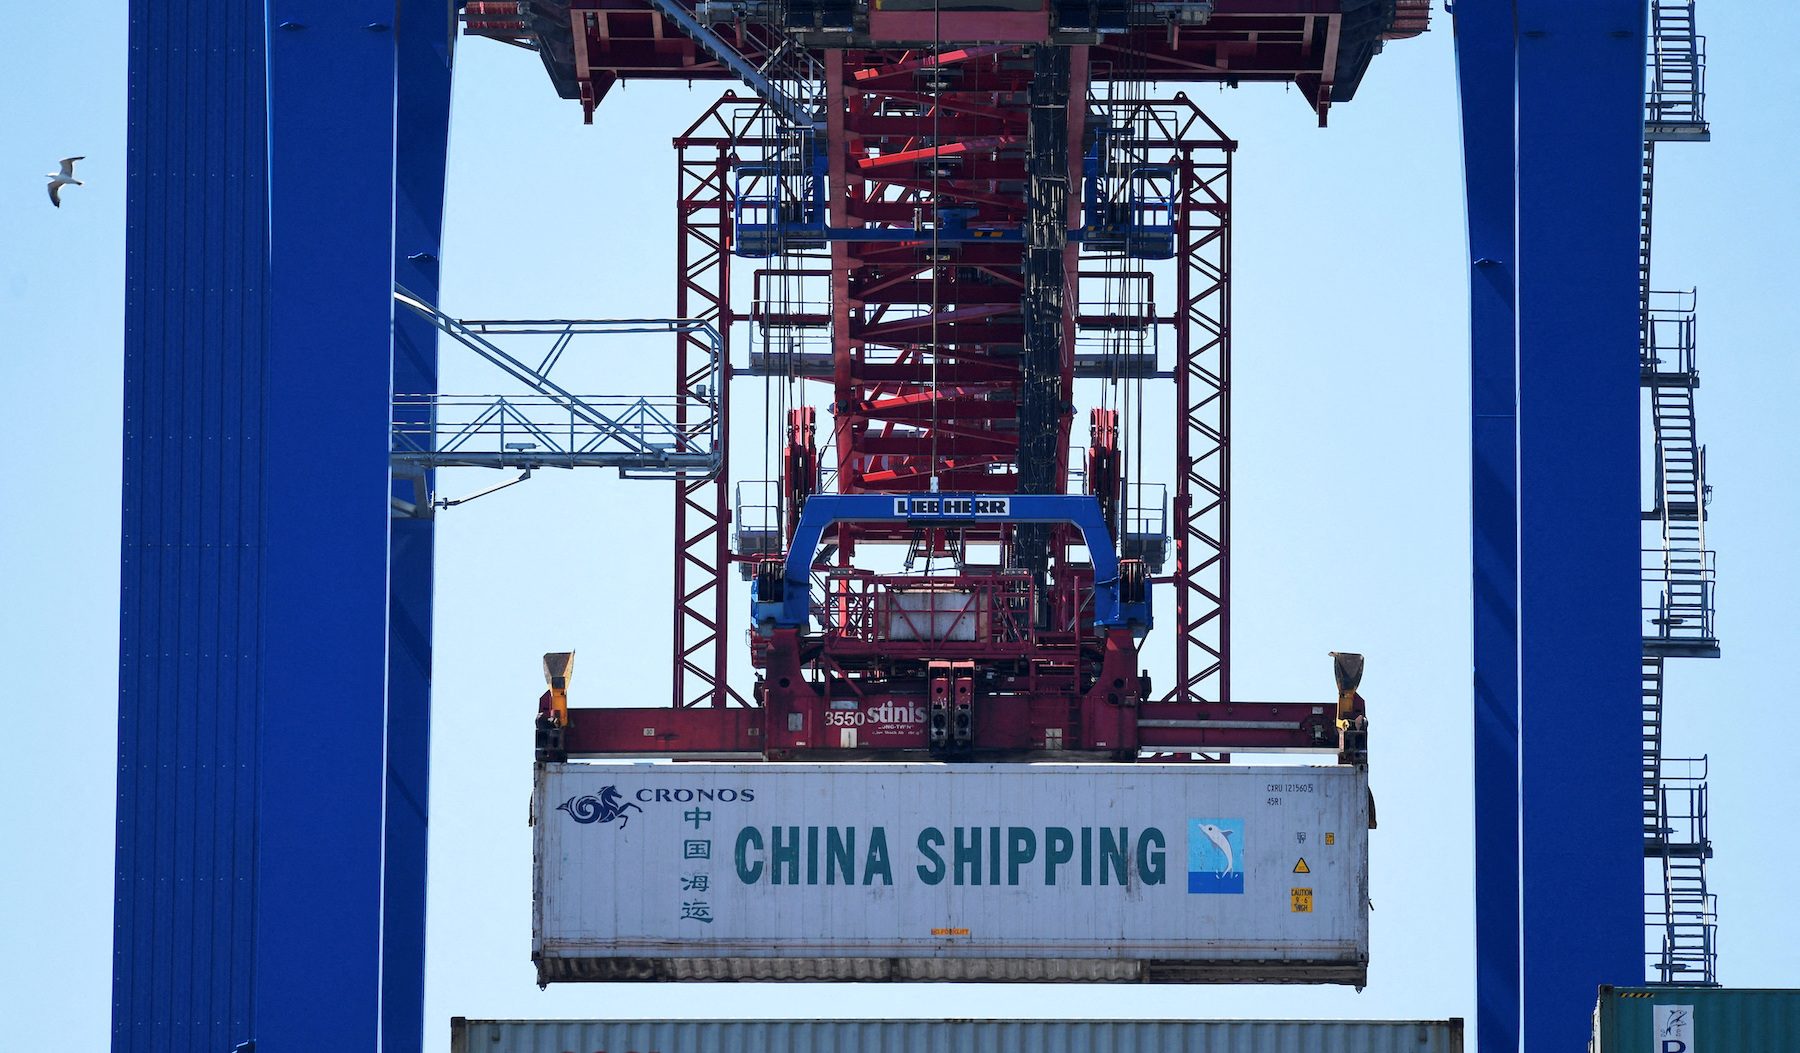 Germany drawing up new China trade policy, vows ‘no more naivete’